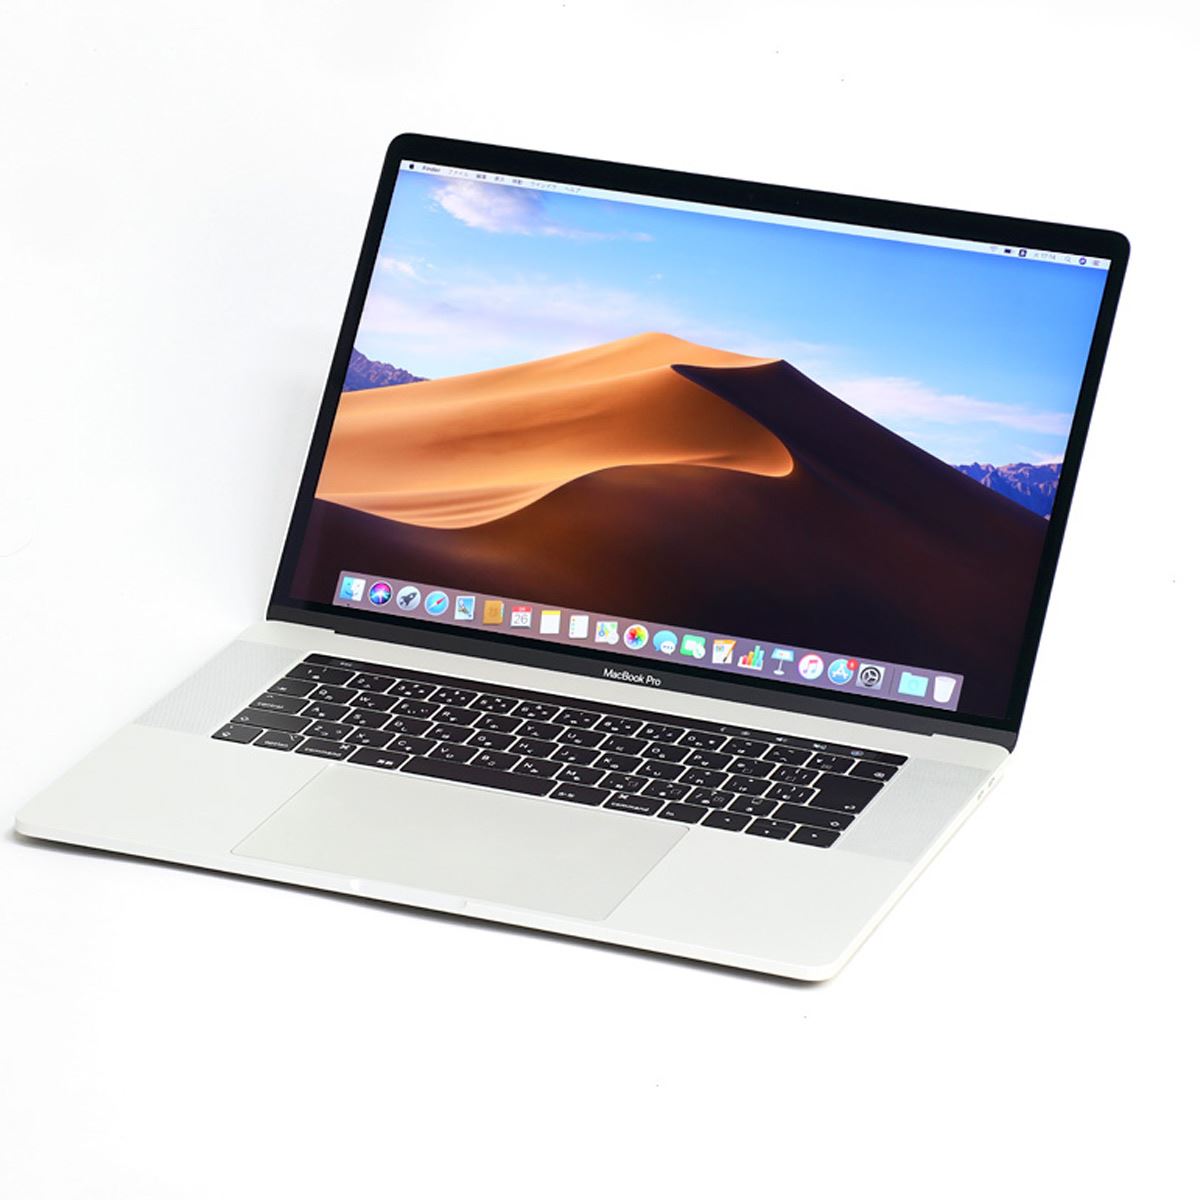 購買 MacBook Pro 15インチ Mid 2017 リコール非該当 observajep.com